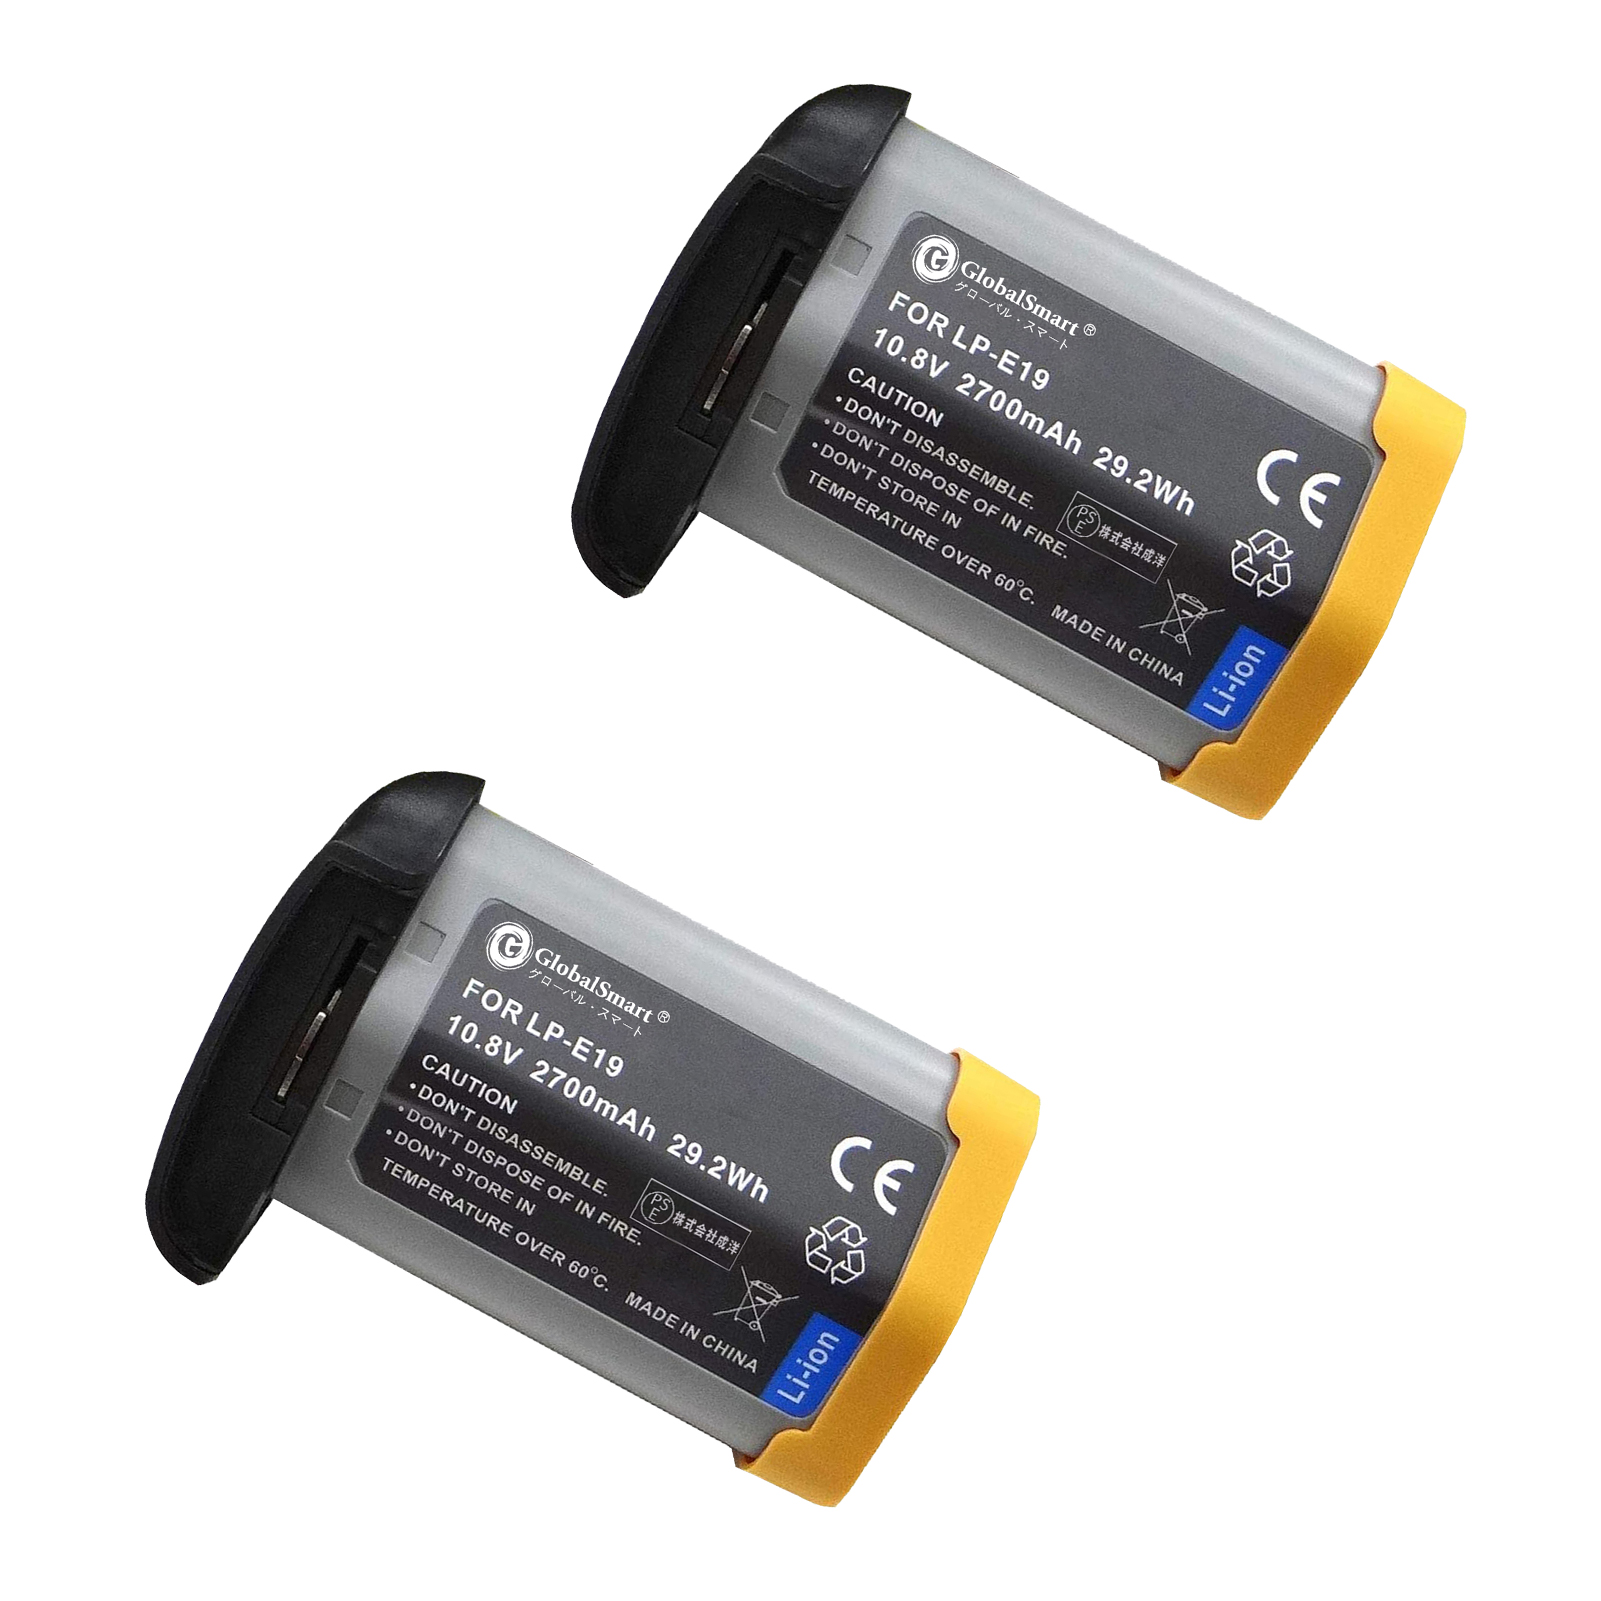 新品 CANONキヤノン EOS 1D Mark IV 互換バッテリパック互換バッテリー リチウムイオンバッテリー デジタルビデオカメラ デジカメ PSE認証 1年保証 対応デジタルカメラ 充電池 LG23EQ